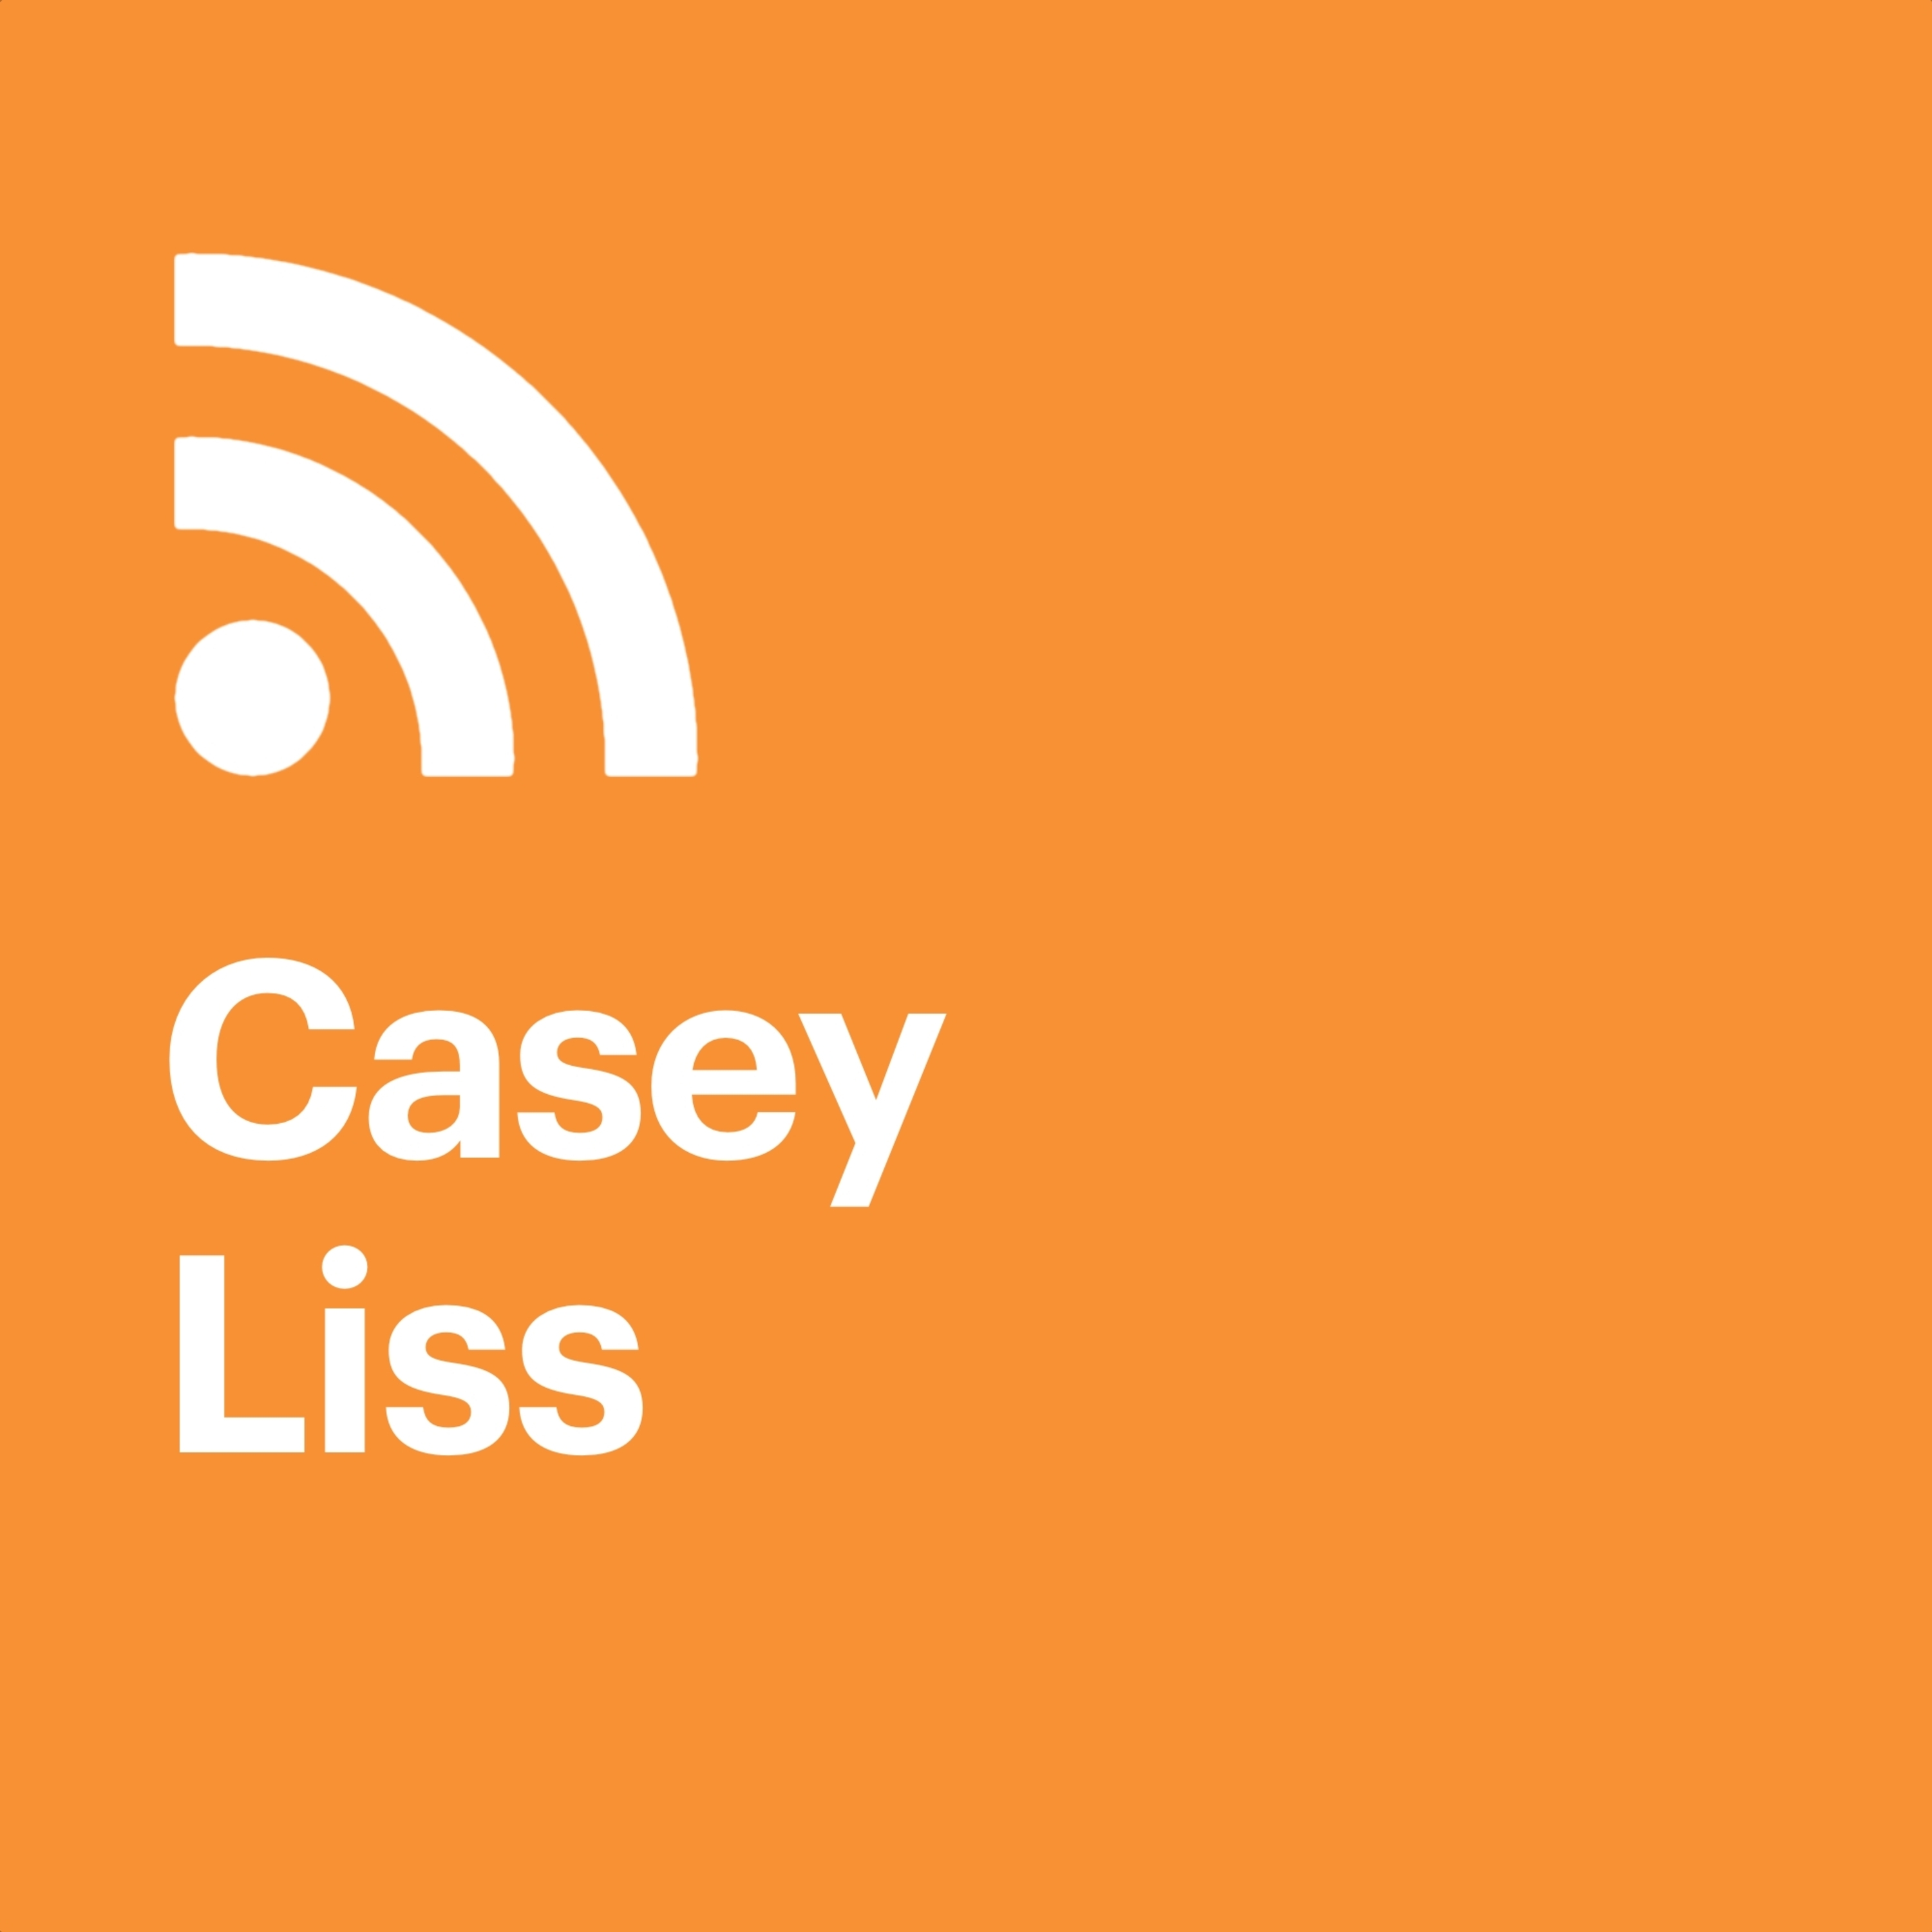 Casey Liss